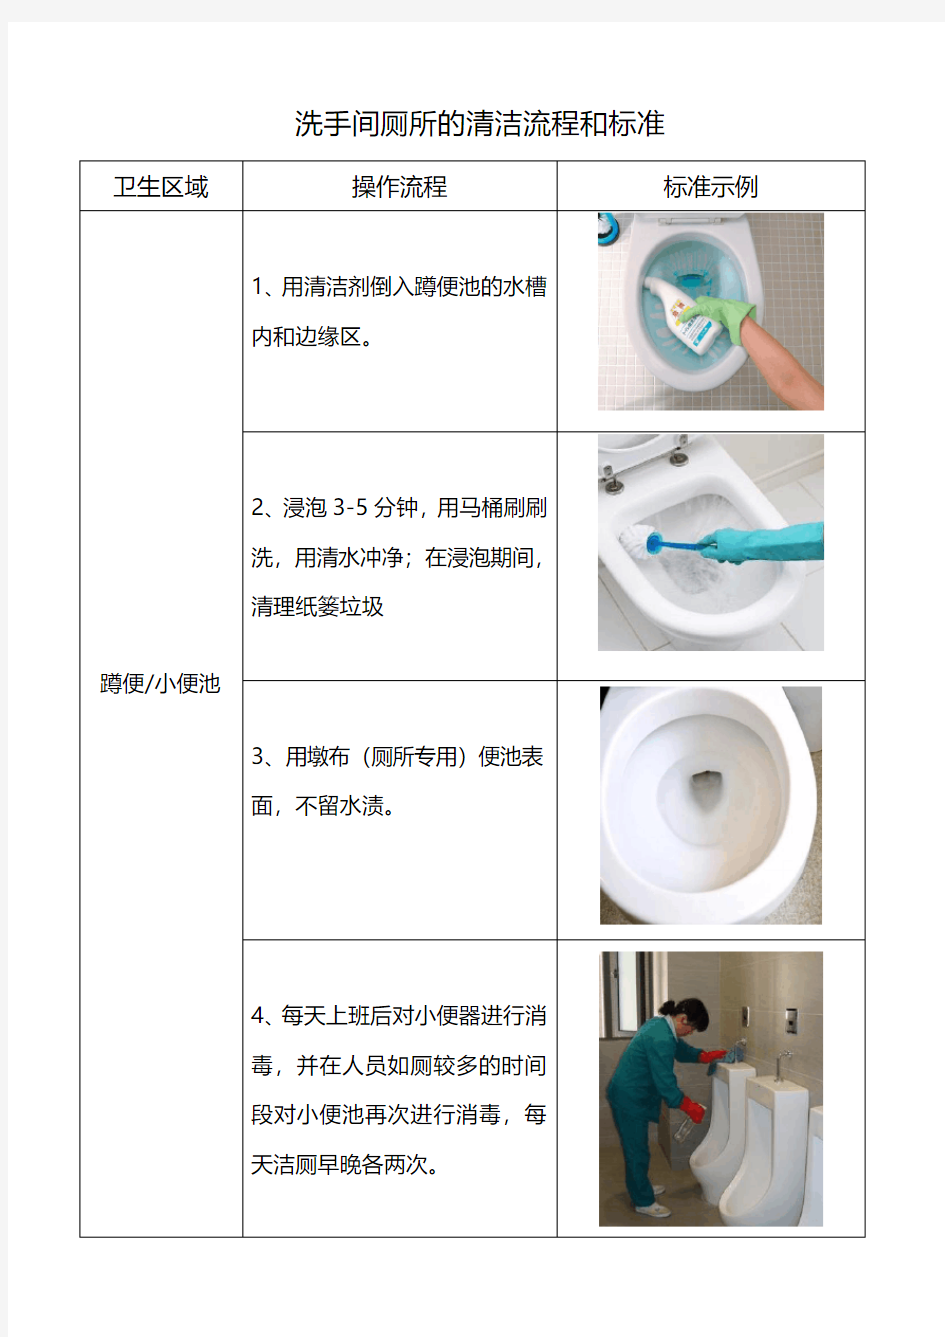 洗手间厕所的清洁流程和标准